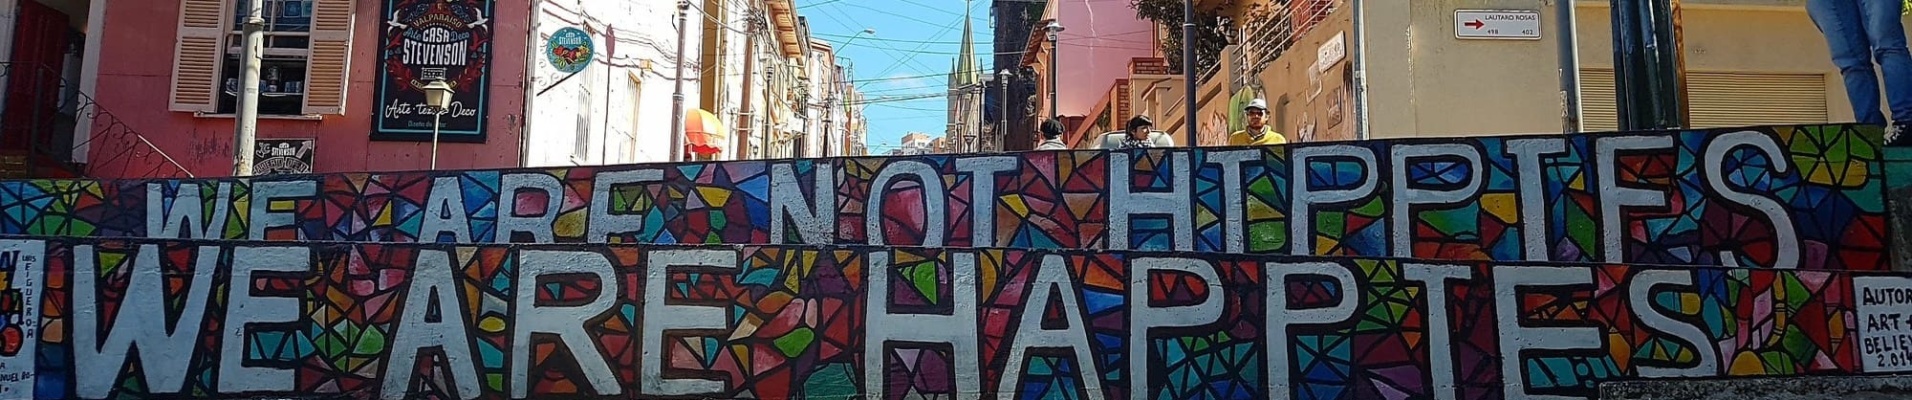 Peinture murale street art Valparaiso, Chili. Nous ne sommes pas des hippies, nous sommes des "happies", la joie de vivre à la chilienne. Agence locale Chili.